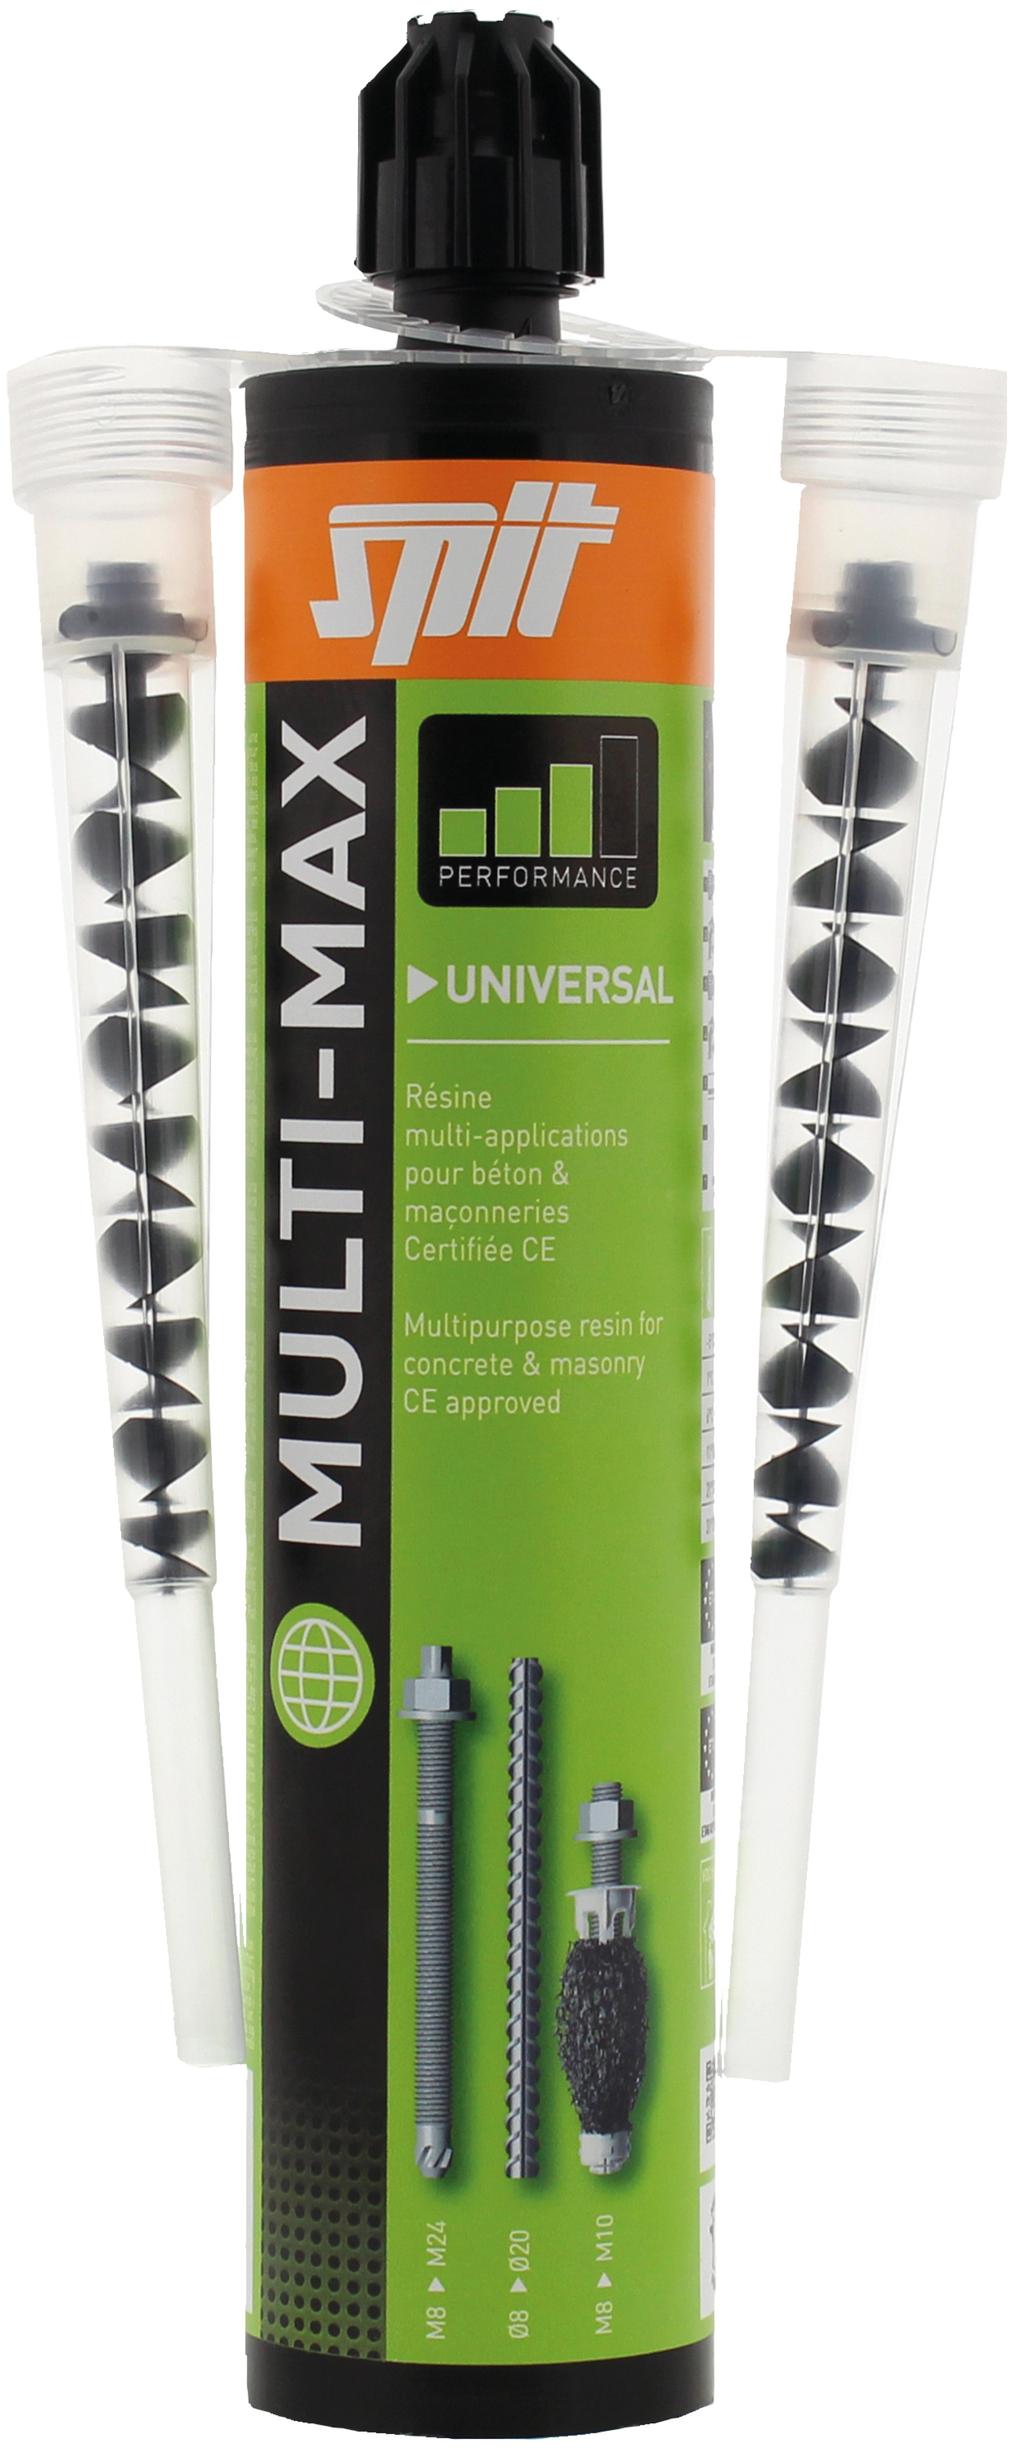 23/02/2019 MULTI-MAX DESCRIPCIÓN DEL PRODUCTO Anclaje químico polivalente de metacrilato sin estireno para múltiples aplicaciones.